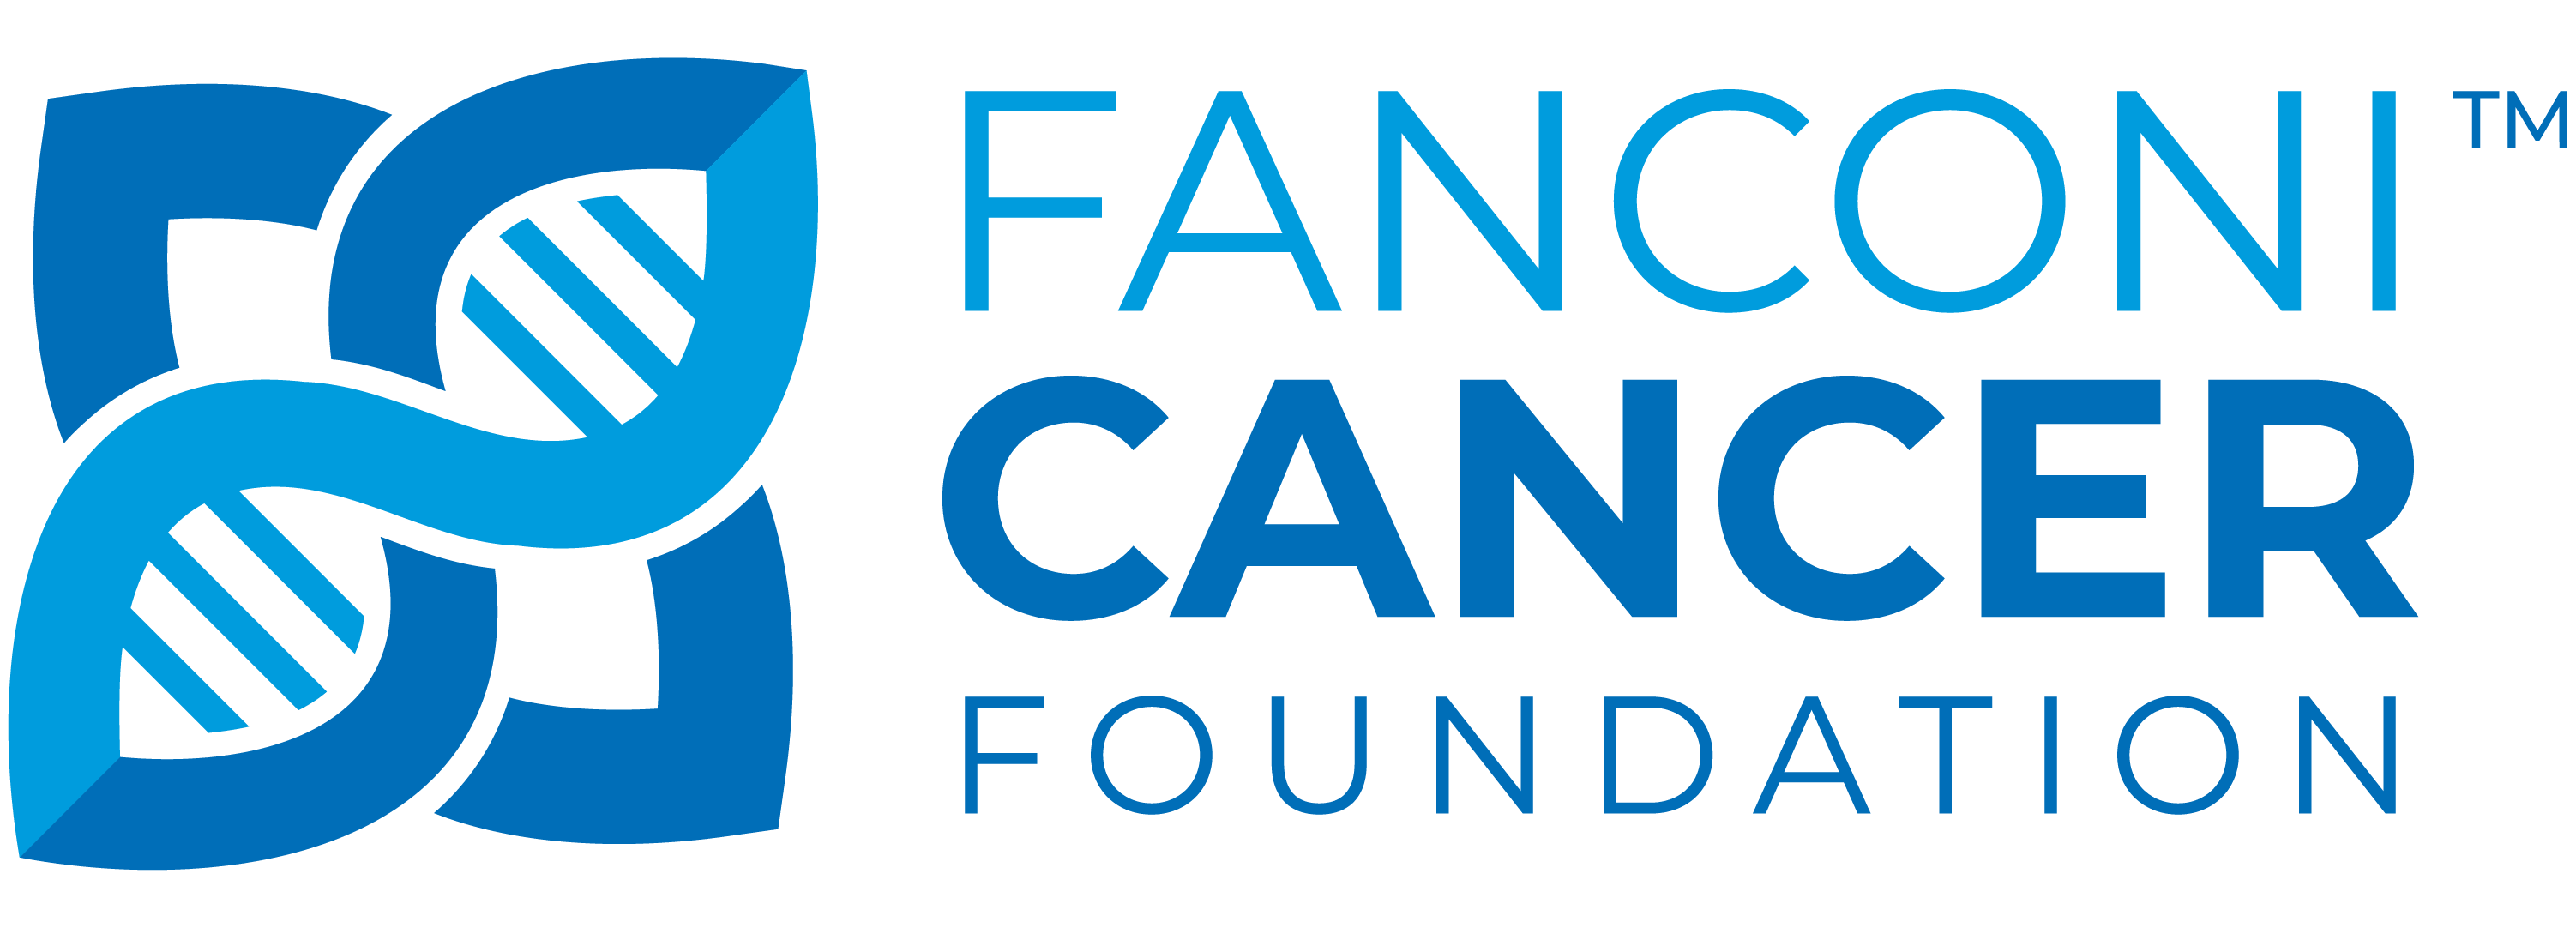 Fanconi Cancer Foundation logo